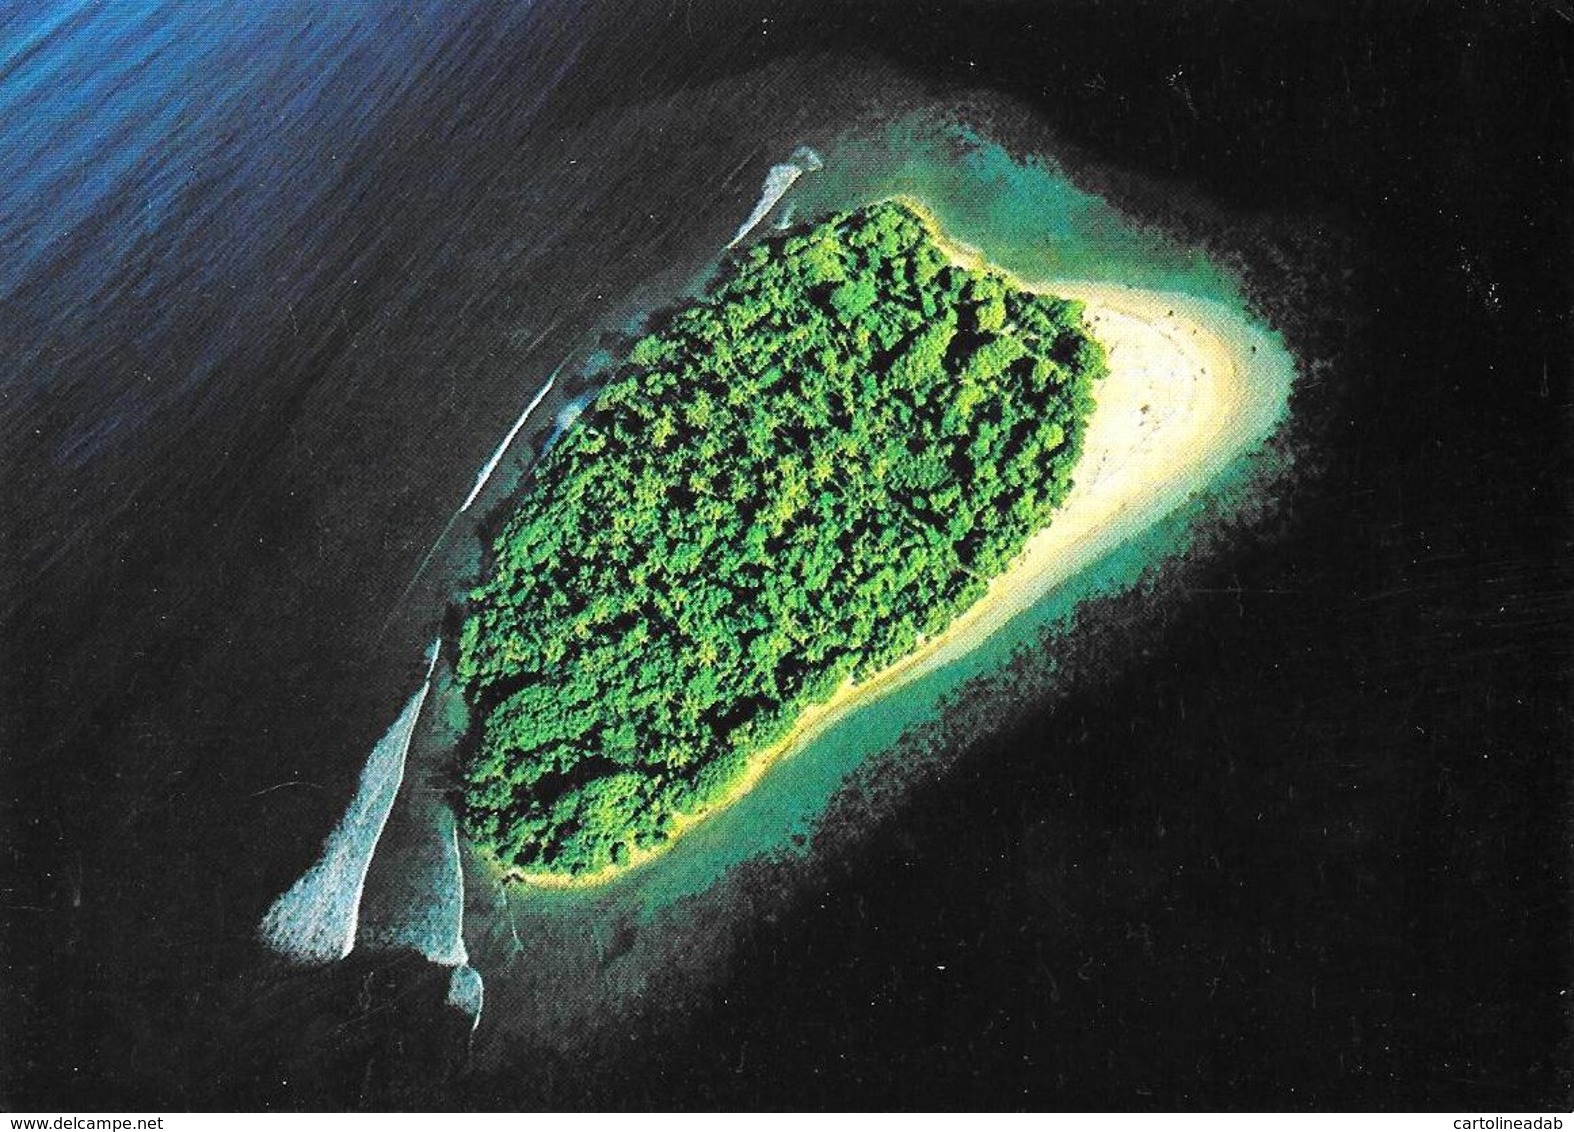 [MD3005] CPM - MALDIVE - UNIHABITED ISLAND - ART EDITION - BY ERIC KLEMM - Non Viaggiata - Maldivas